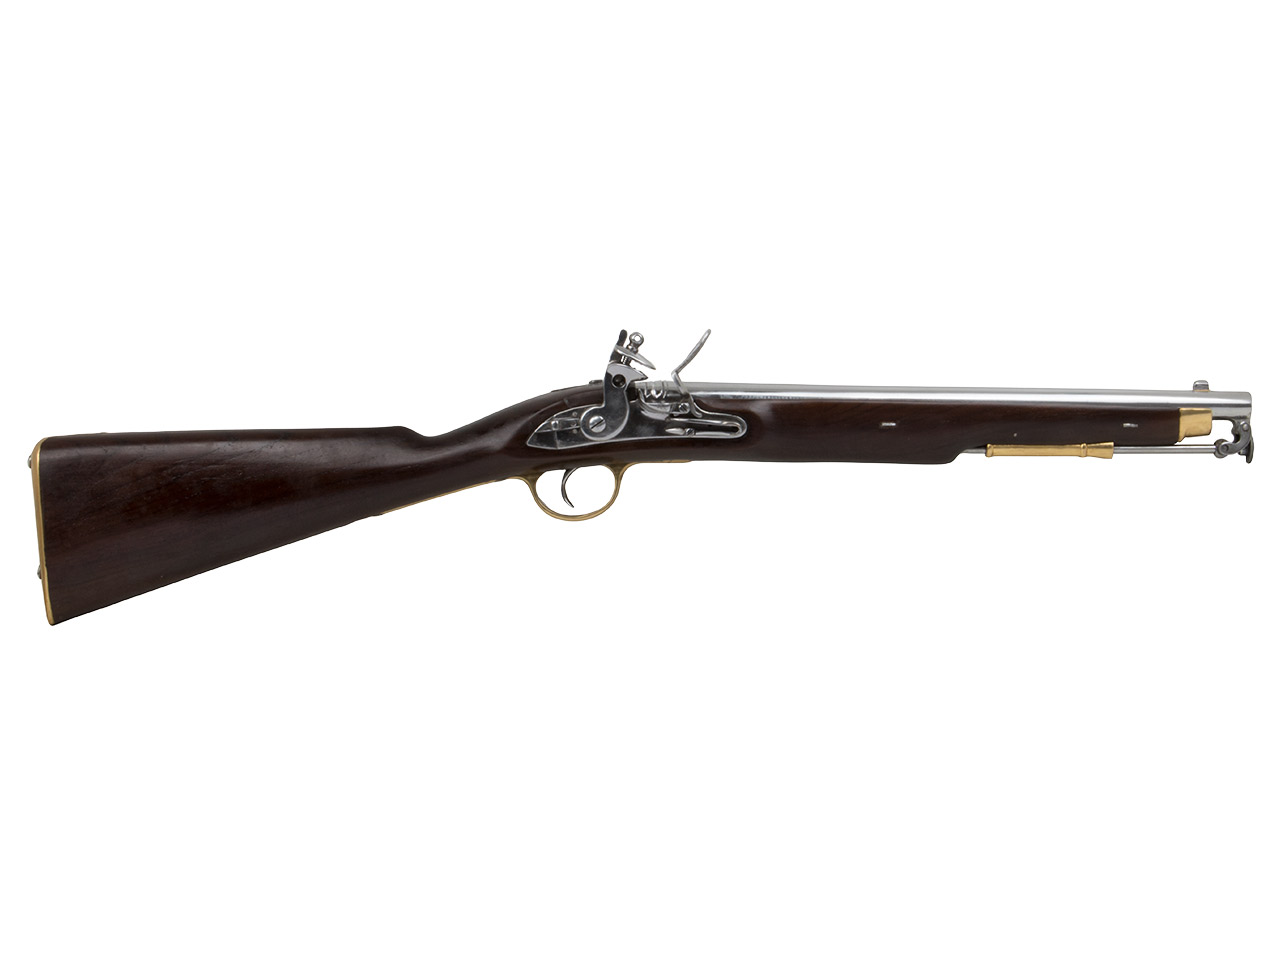 Vorderlader Steinschlossgewehr Paget Cavalry Carbine Kavalleriegewehr 1808 Kaliber .63 bzw. 16 mm (P18)